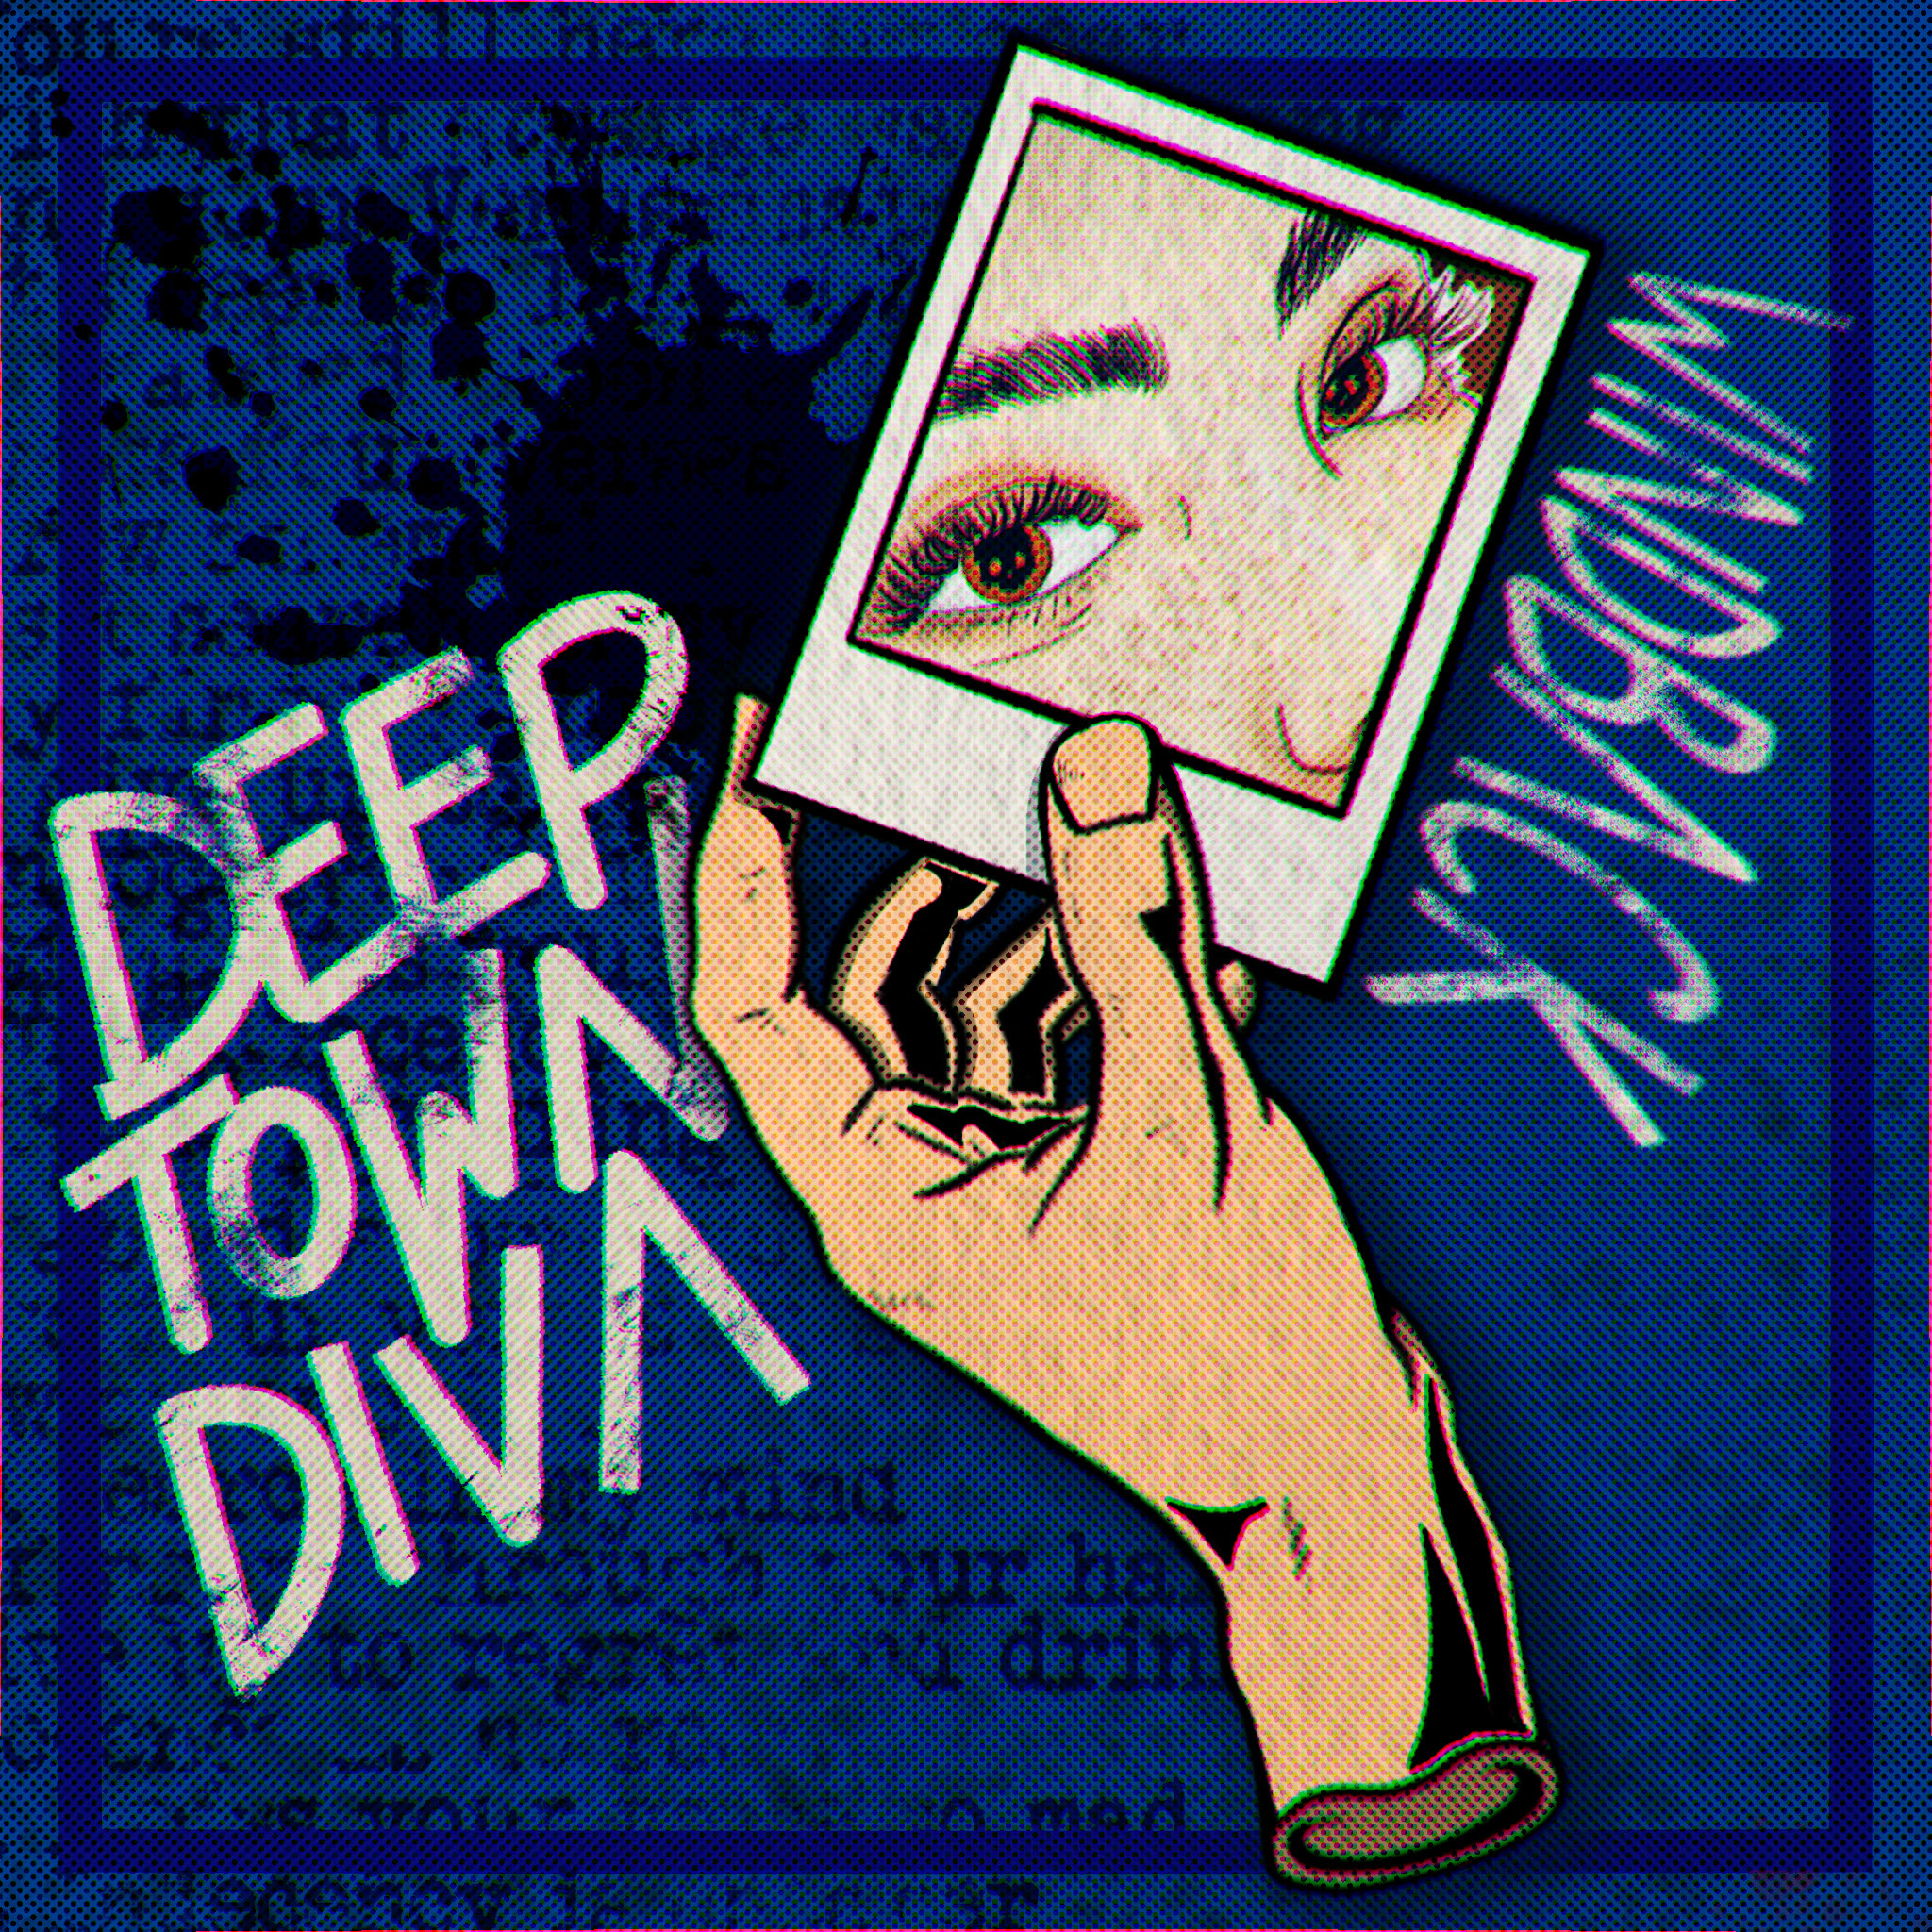 Deep Town Diva presentano il nuovo brano Wind Back